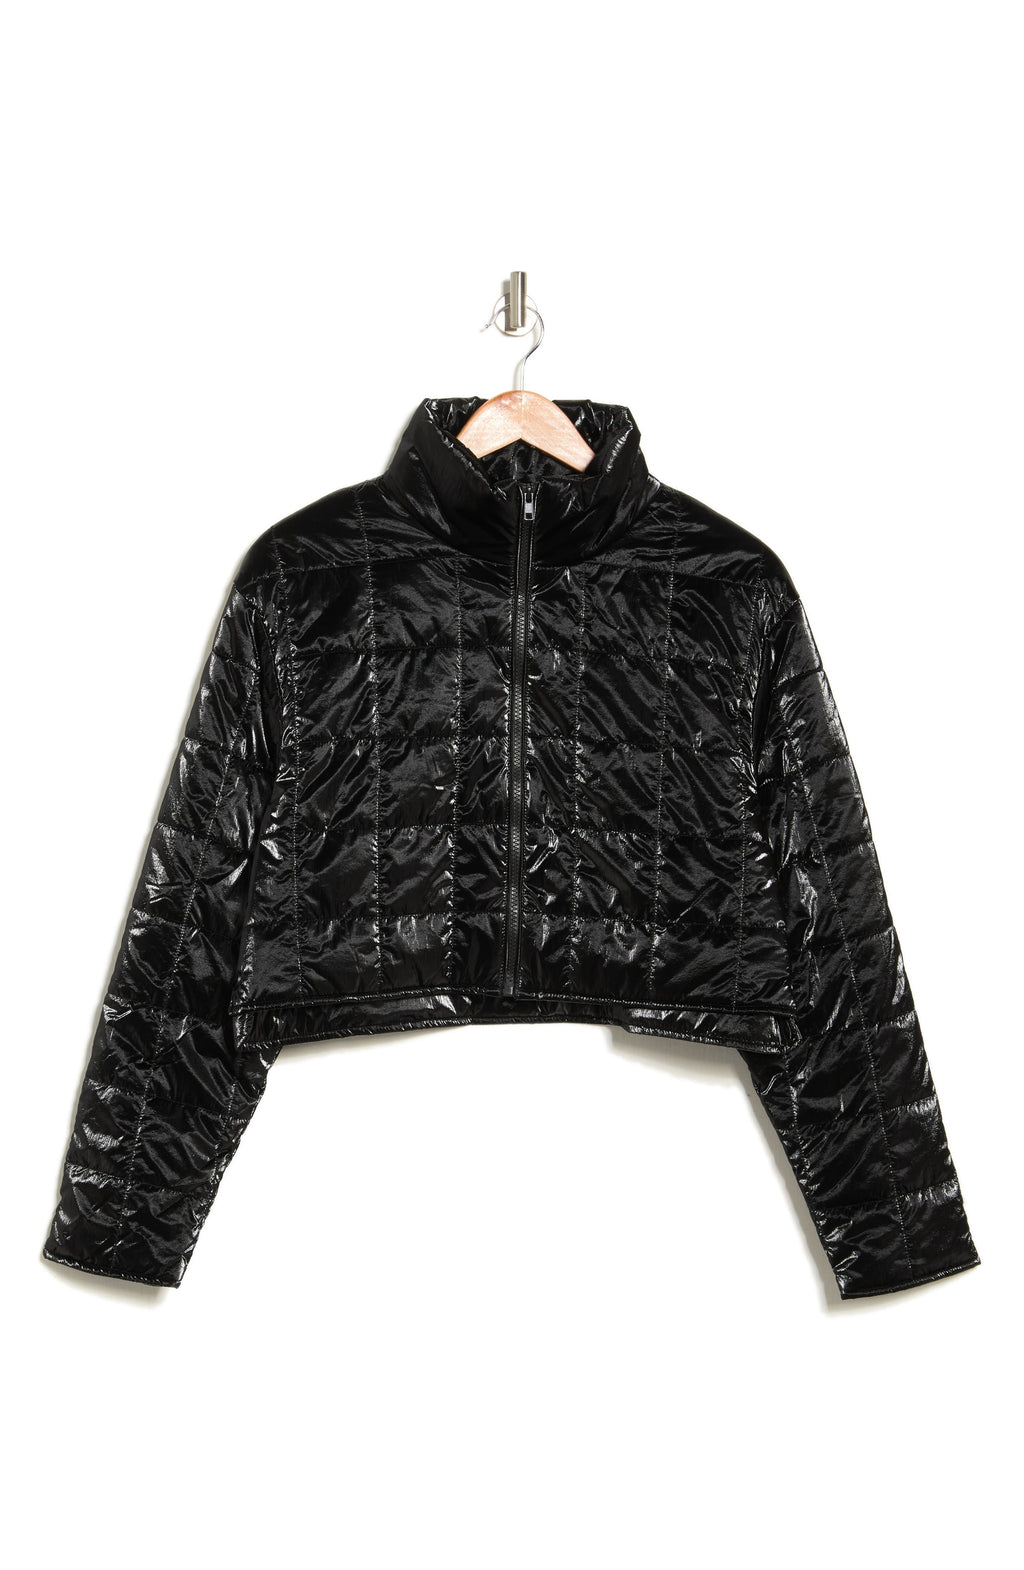 ELODIE Metallic Crop Quilted Jacket, Alternate, color, BLACK